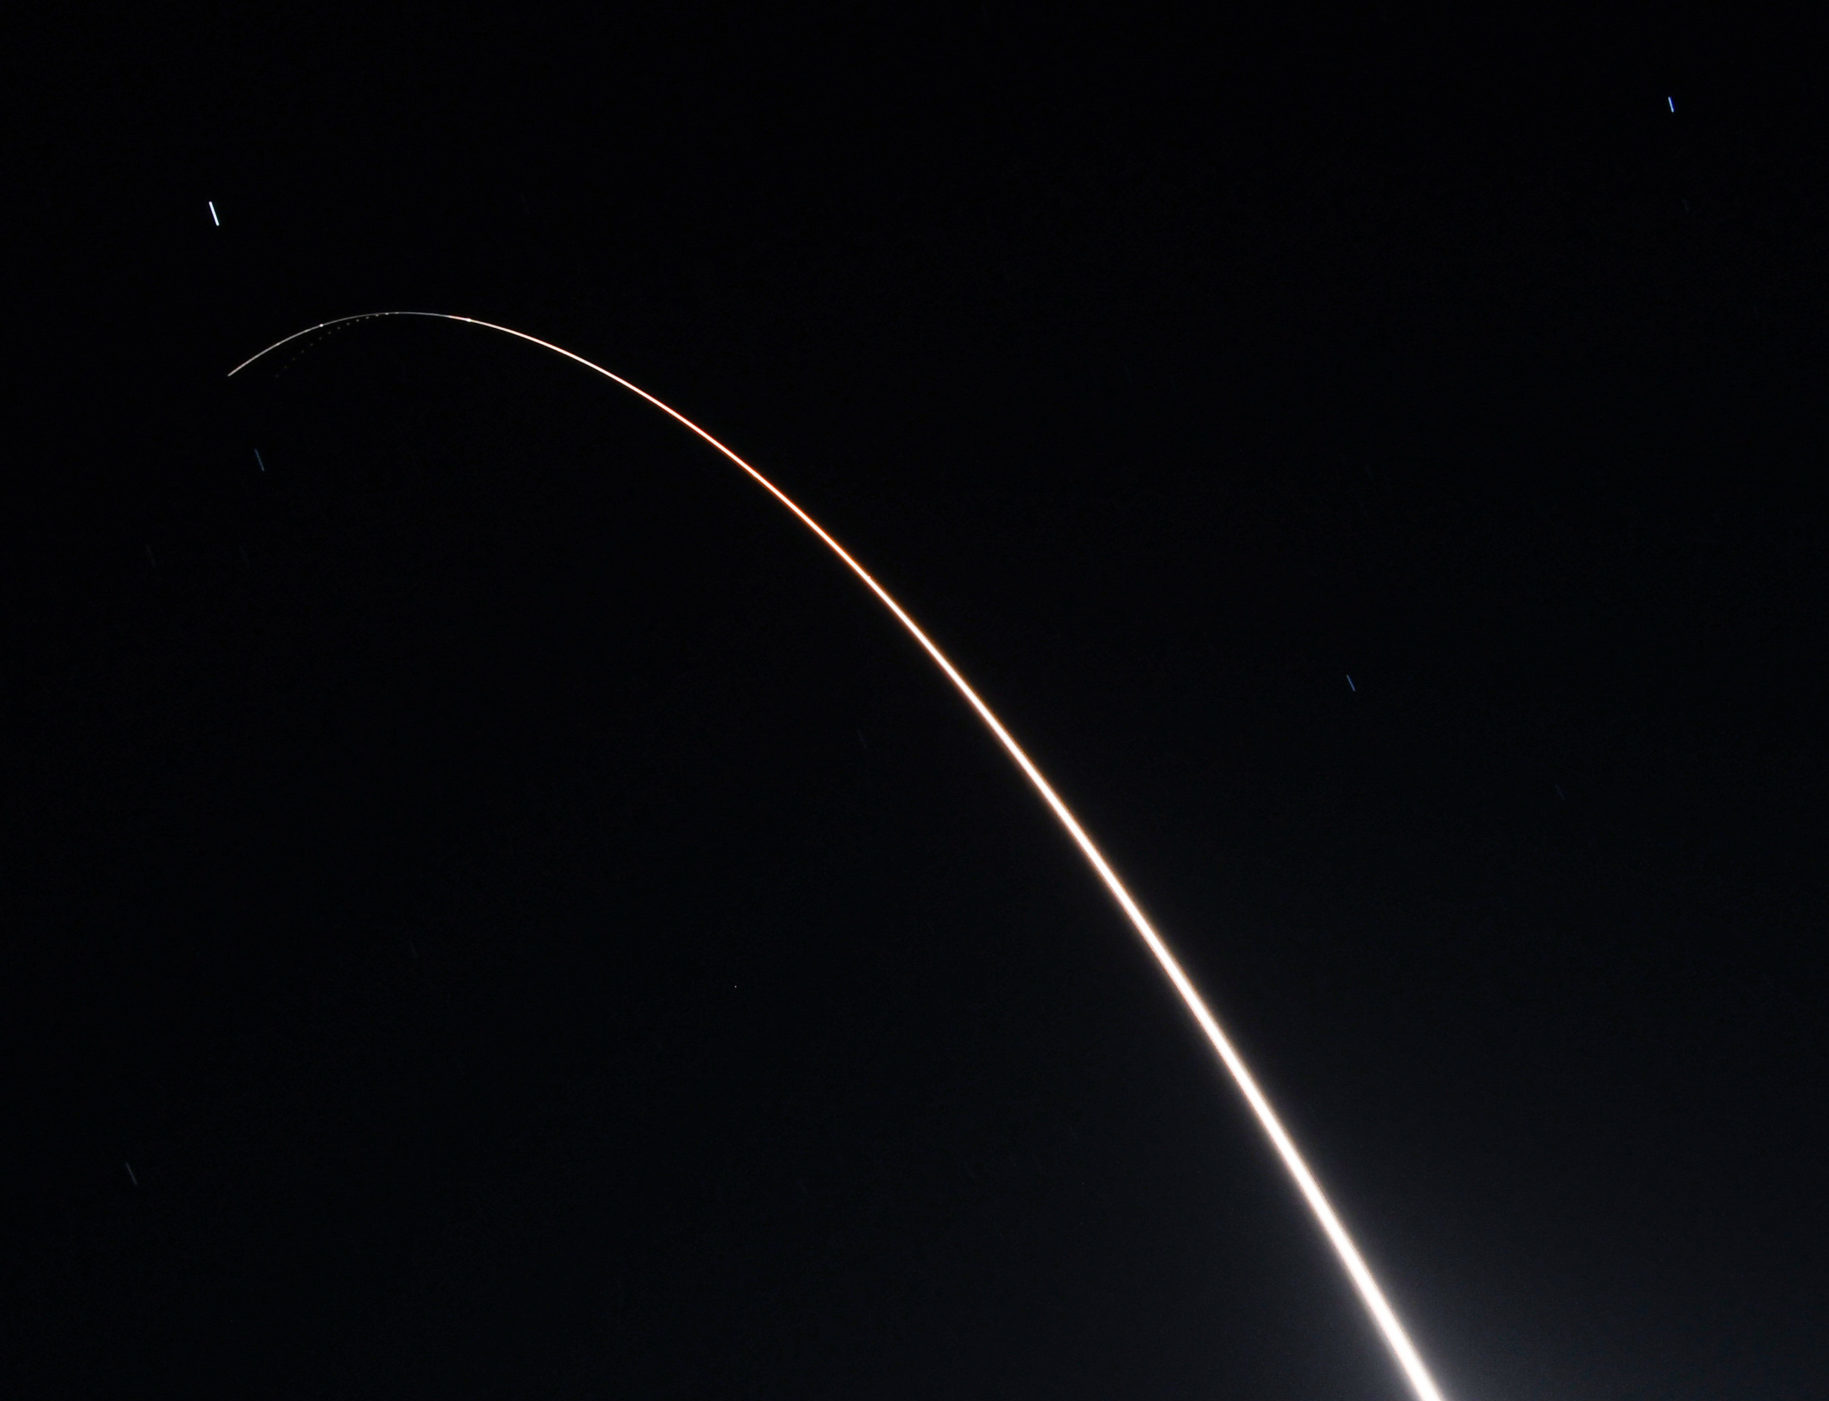 ВВС запустили первое испытание межконтинентальной баллистической ракеты после того, как Россия «приостановила» новый СНВ